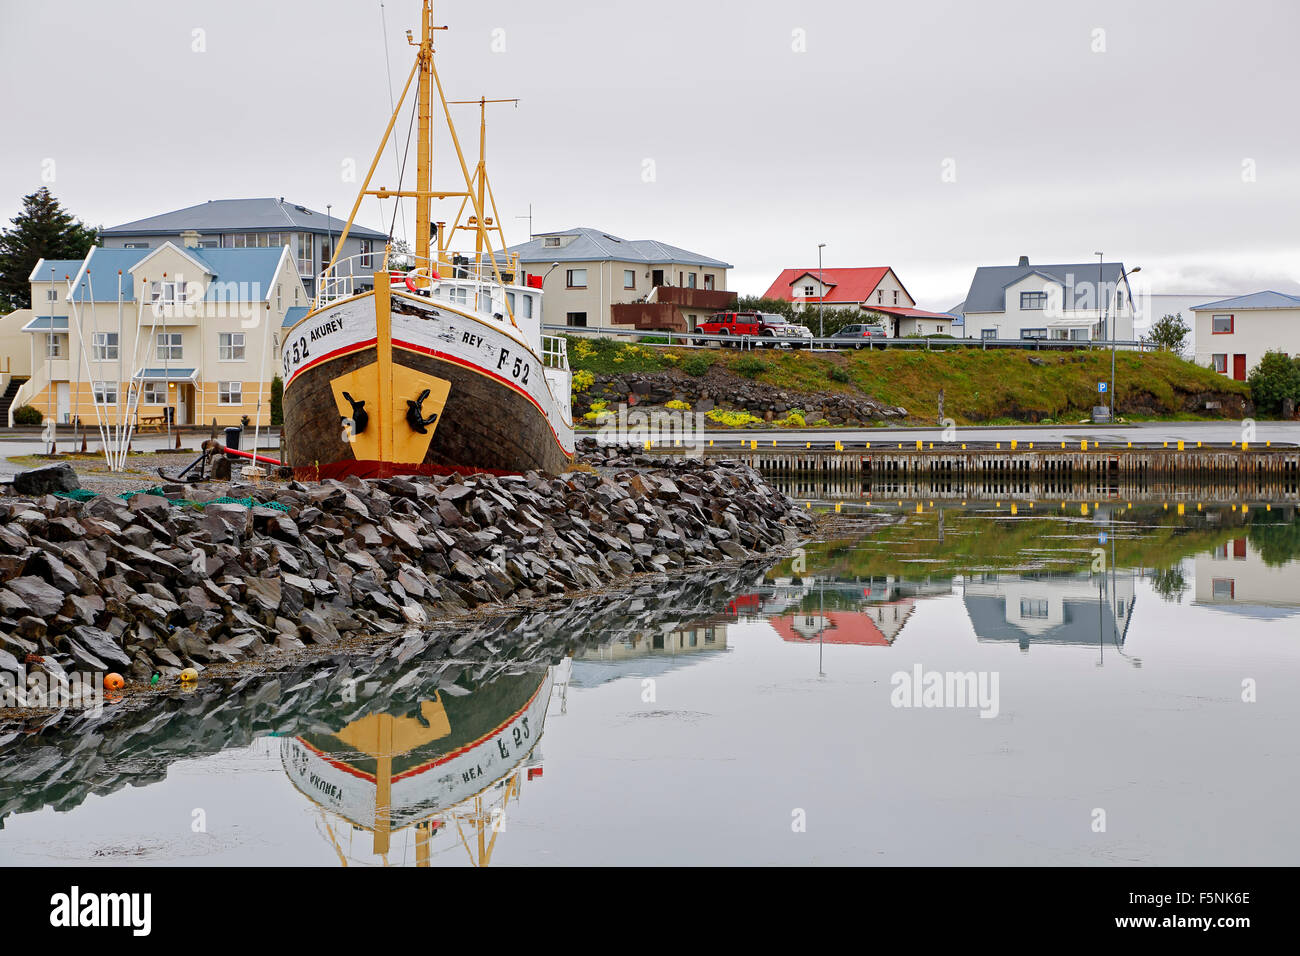 Voile et maisons colorées, port, Hofn, Islande Banque D'Images